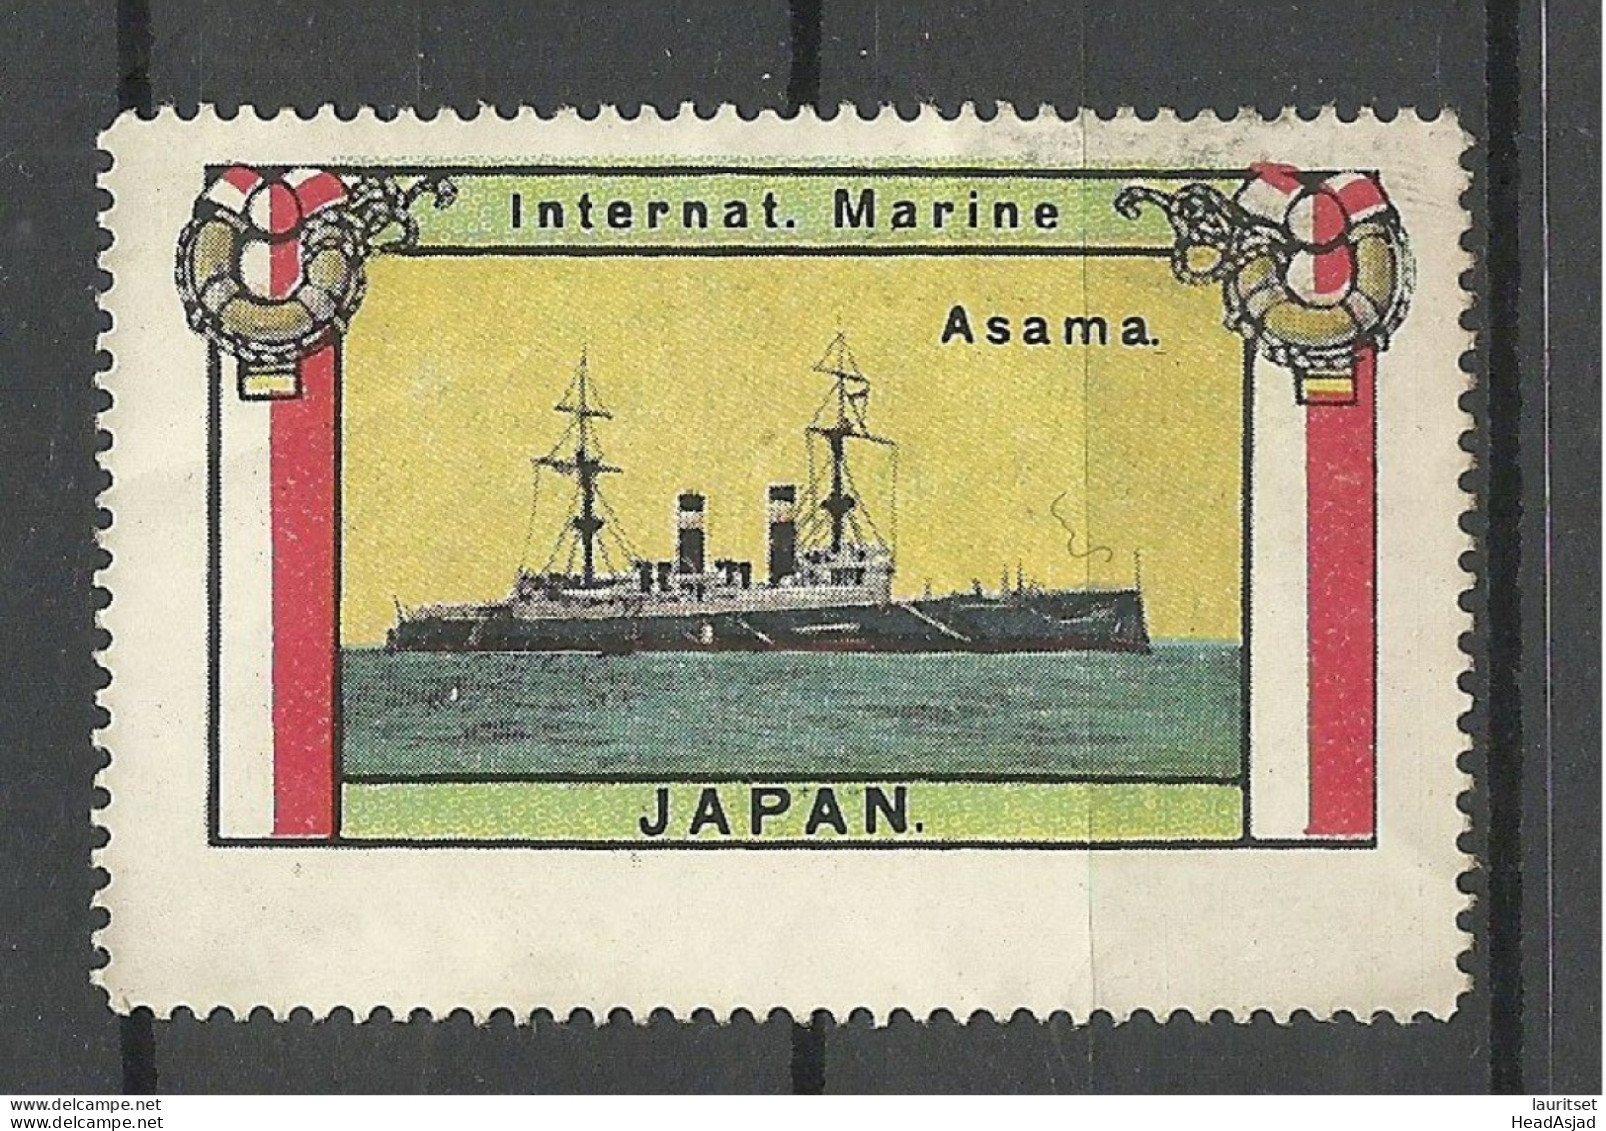 JAPAN NIPPON Intern. Marine Der Schiff Ship ASAMA Vignette Poster Stamp (*) - Schiffe